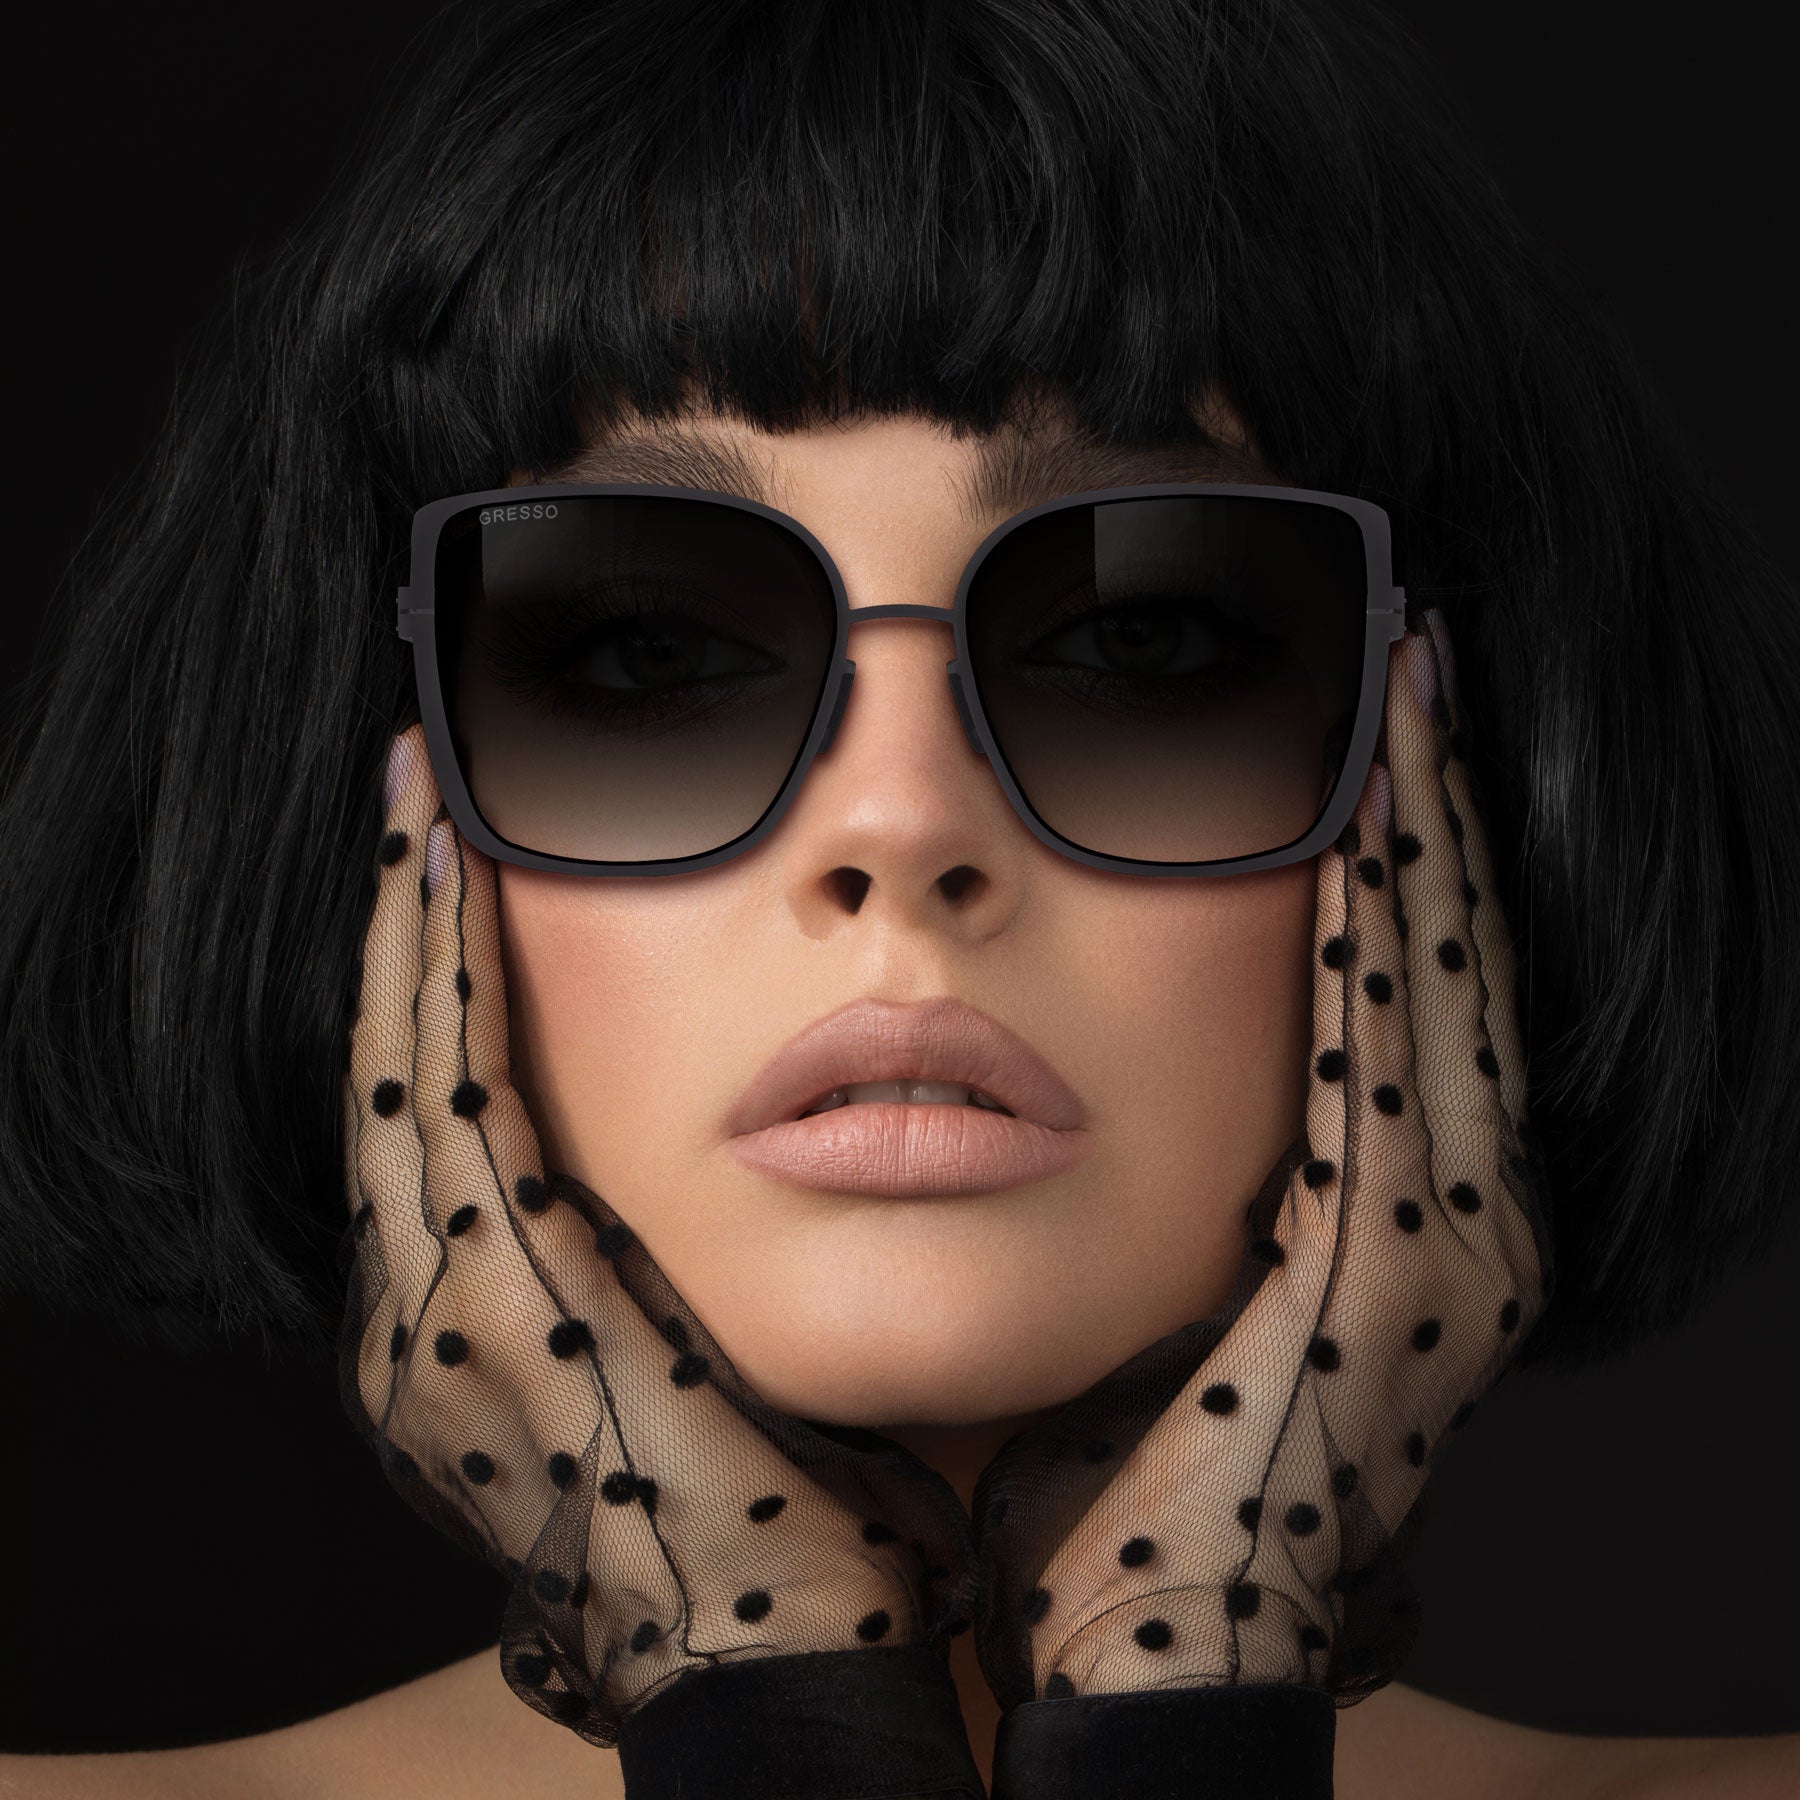 Черные женские солнцезащитные очки GRESSO Emma, бабочка, изготовленные из титана, с поляризационными линзами Zeiss